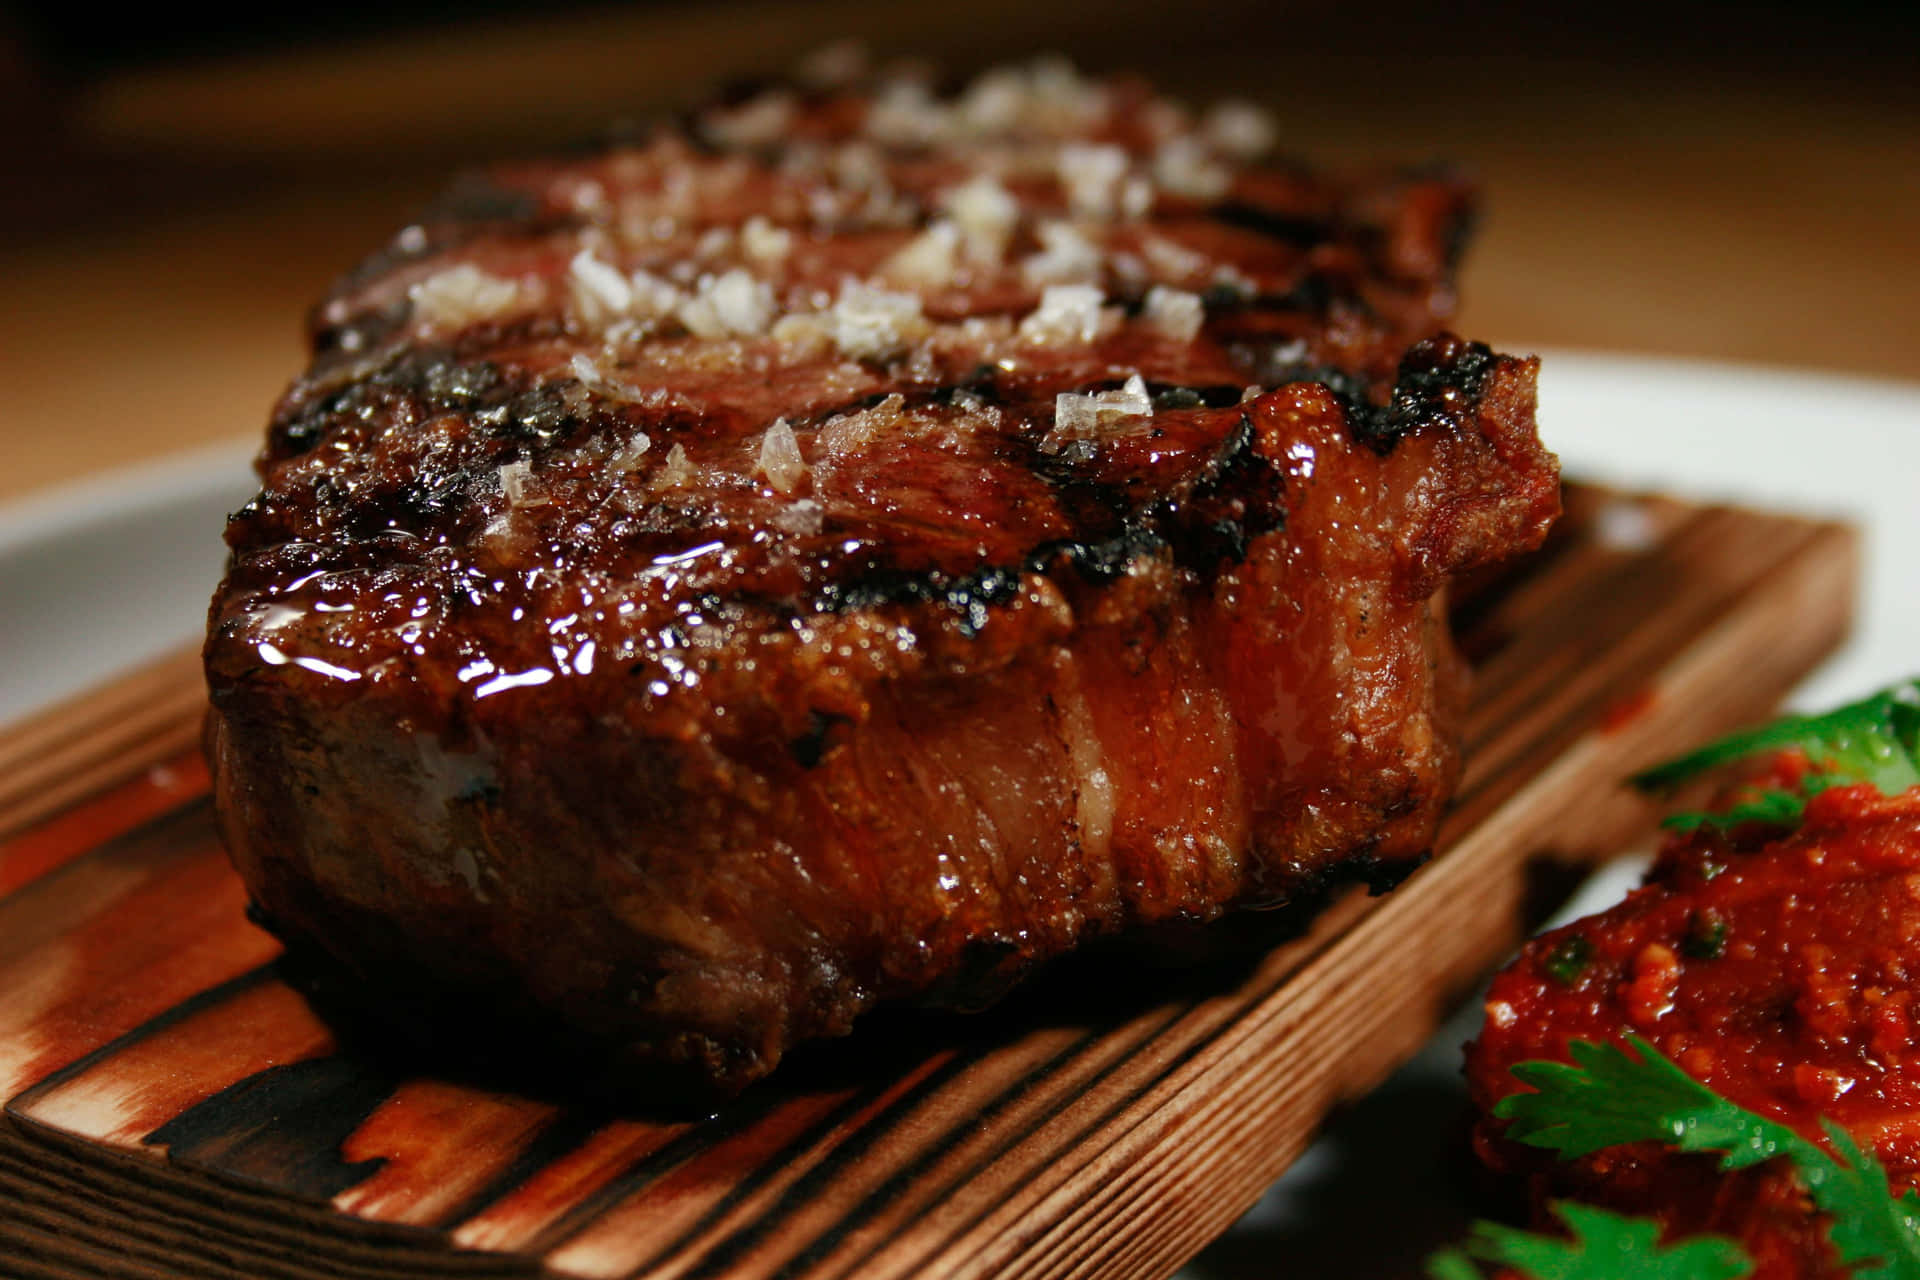 A Steak On A Wooden Board